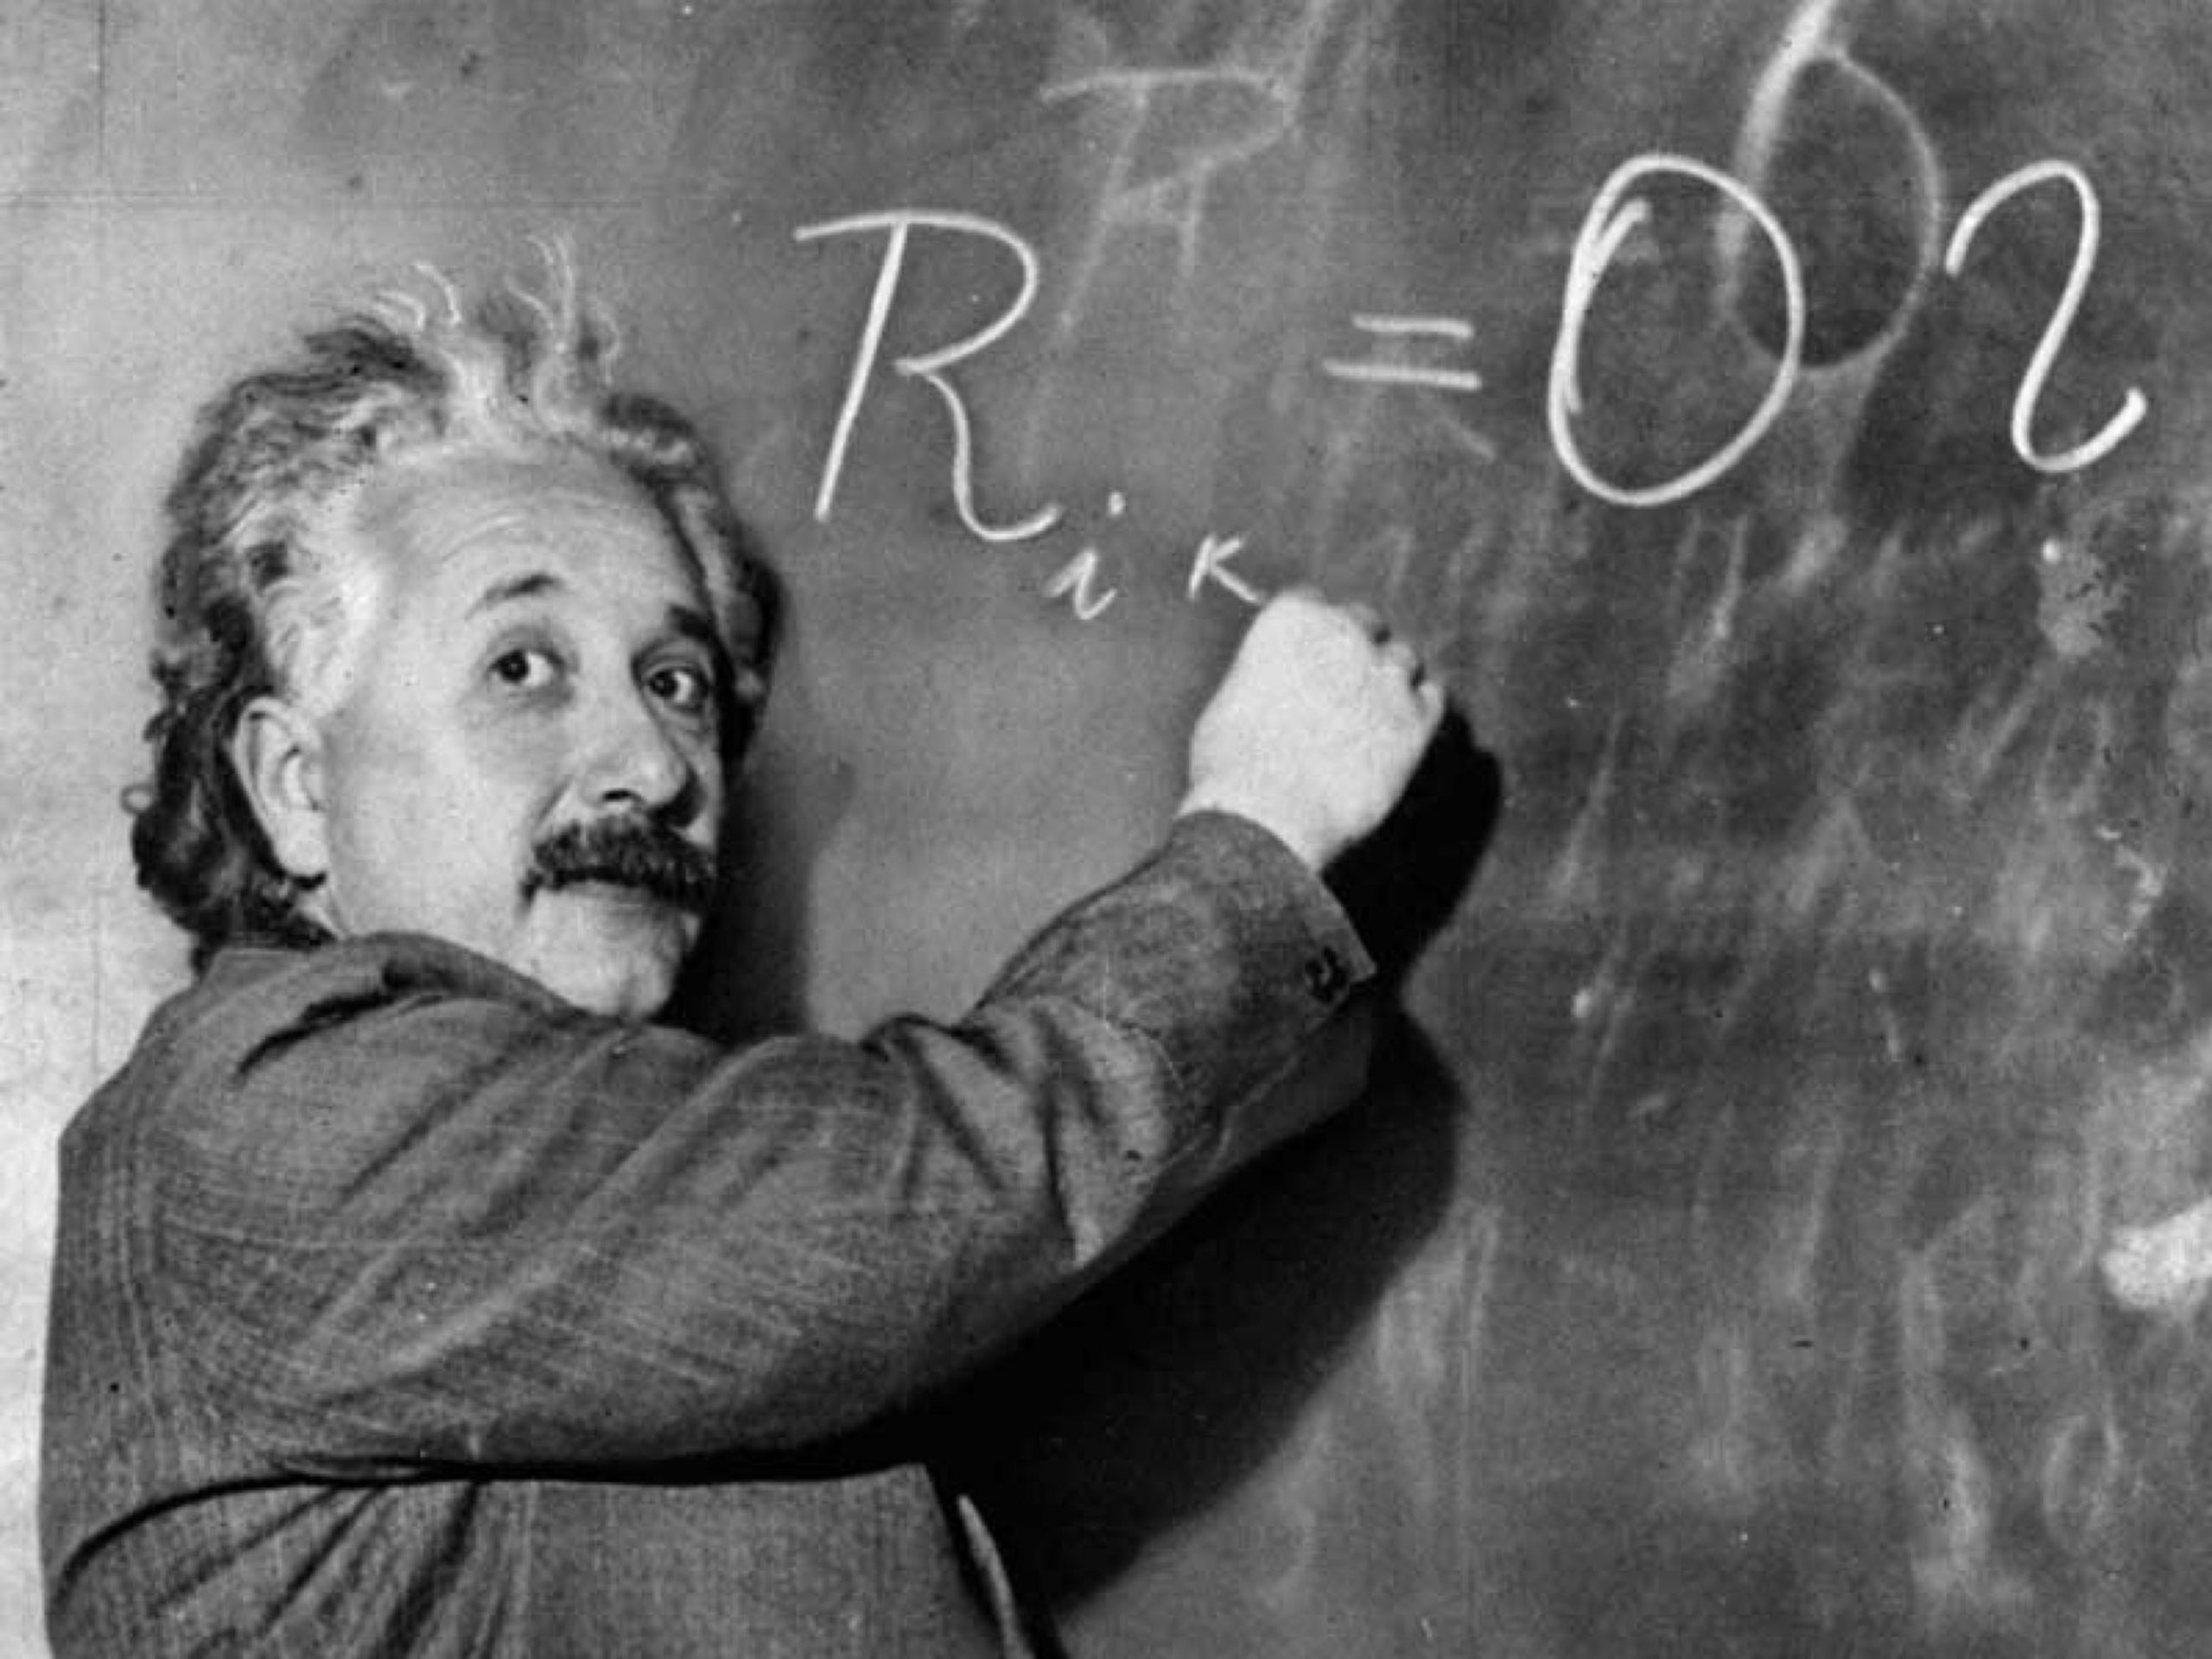 Δημοπρατείται με αστρονομικό ποσό επιστολή του Α.Αϊνστάιν με την πιο διάσημη εξίσωσή του (φωτο)